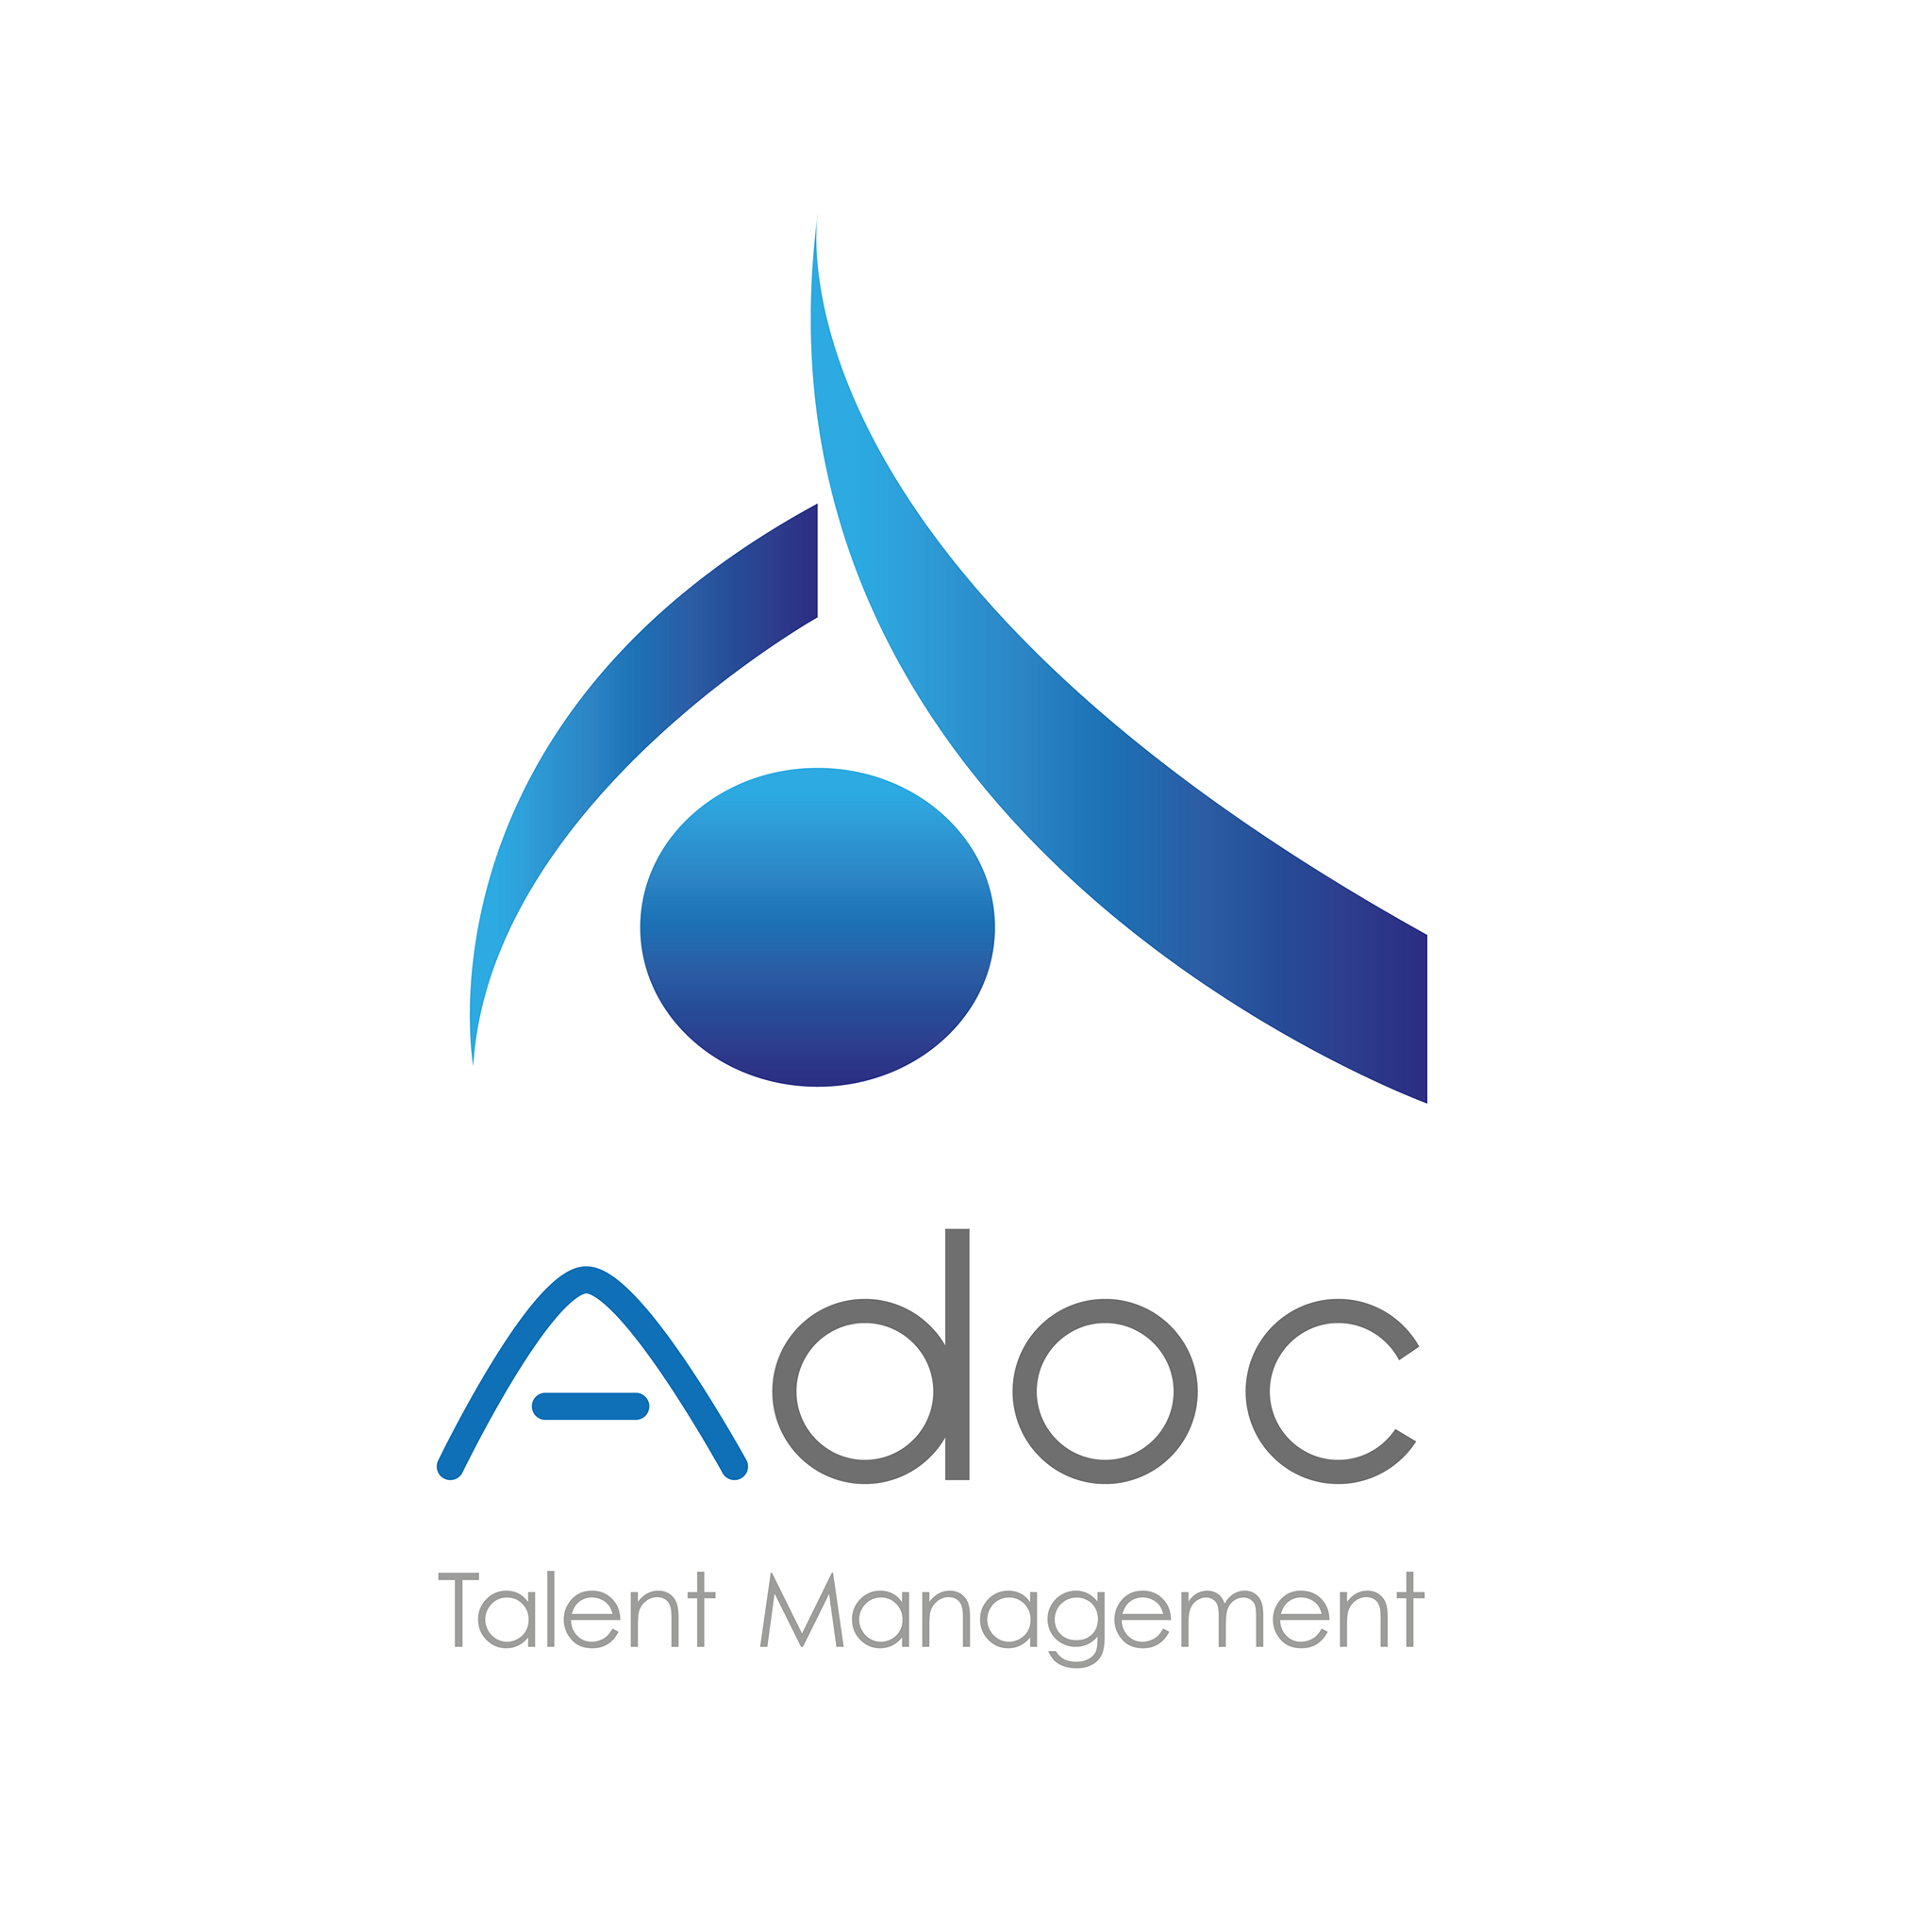 Adoc Talent Management